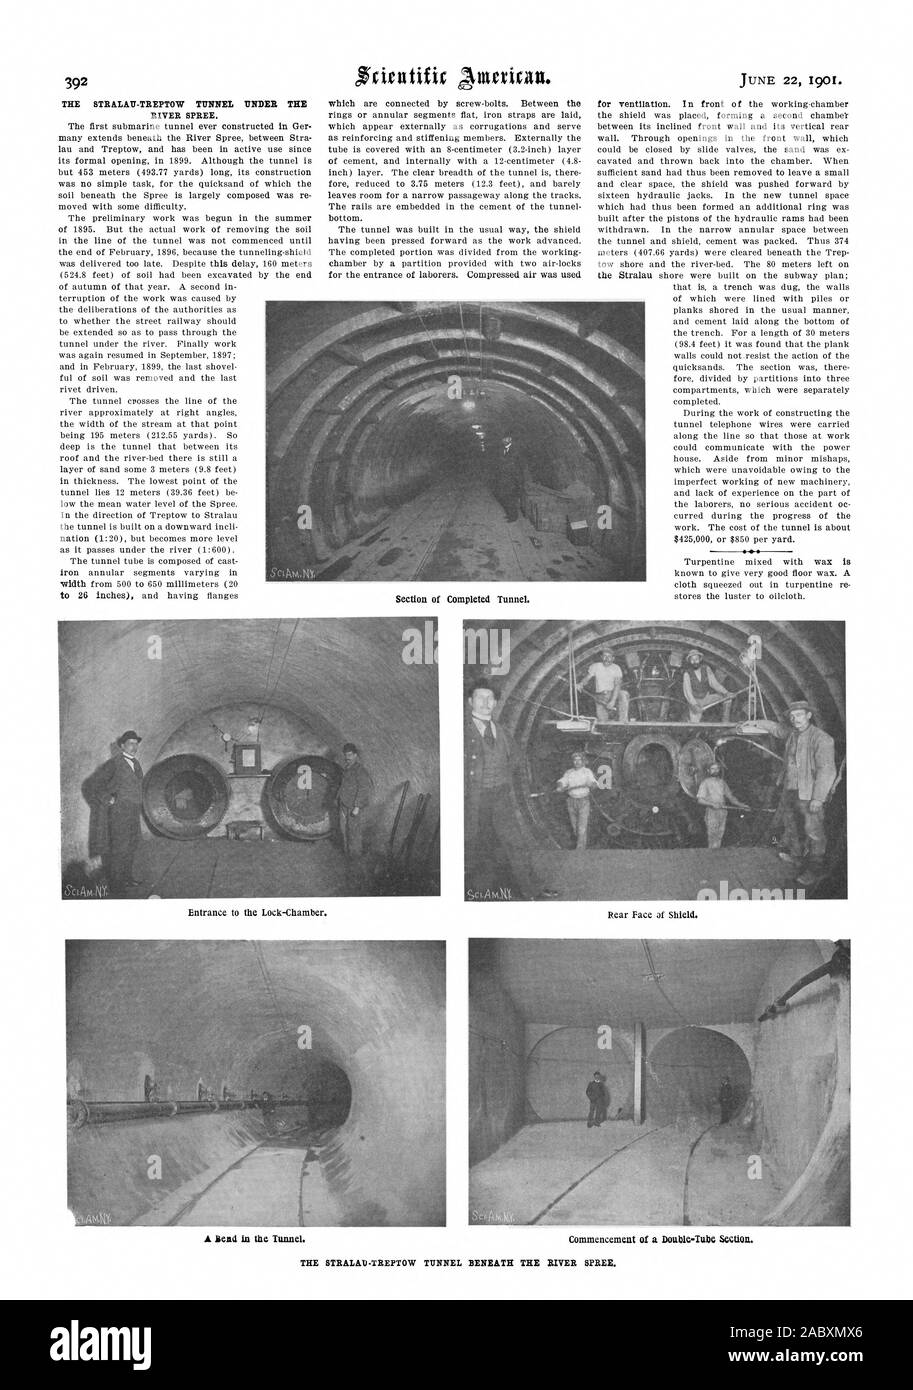 Il STRALAU-TREPTOW TUNNEL sotto il fiume Spree. Il primo tunnel sottomarino mai costruito in Ger molti si estende al di sotto del Fiume Sprea tra Stra lau e Treptow e è stata in uso attivo sin dalla sua apertura ufficiale nel 1899. Anche se il tunnel è ma 453 metri (493.77 metri) lungo la sua costruzione non era un compito semplice per le sabbie mobili di cui il terreno sotto la Sprea è composta in larga misura è stato nuovamente spostato con qualche difficoltà. Il lavoro preliminare è stata iniziata nell'estate del 1895. Ma il vero e proprio lavoro di rimozione dello sporco nella linea del tunnel non è stato avviato fino alla fine di febbraio 1896 Foto Stock